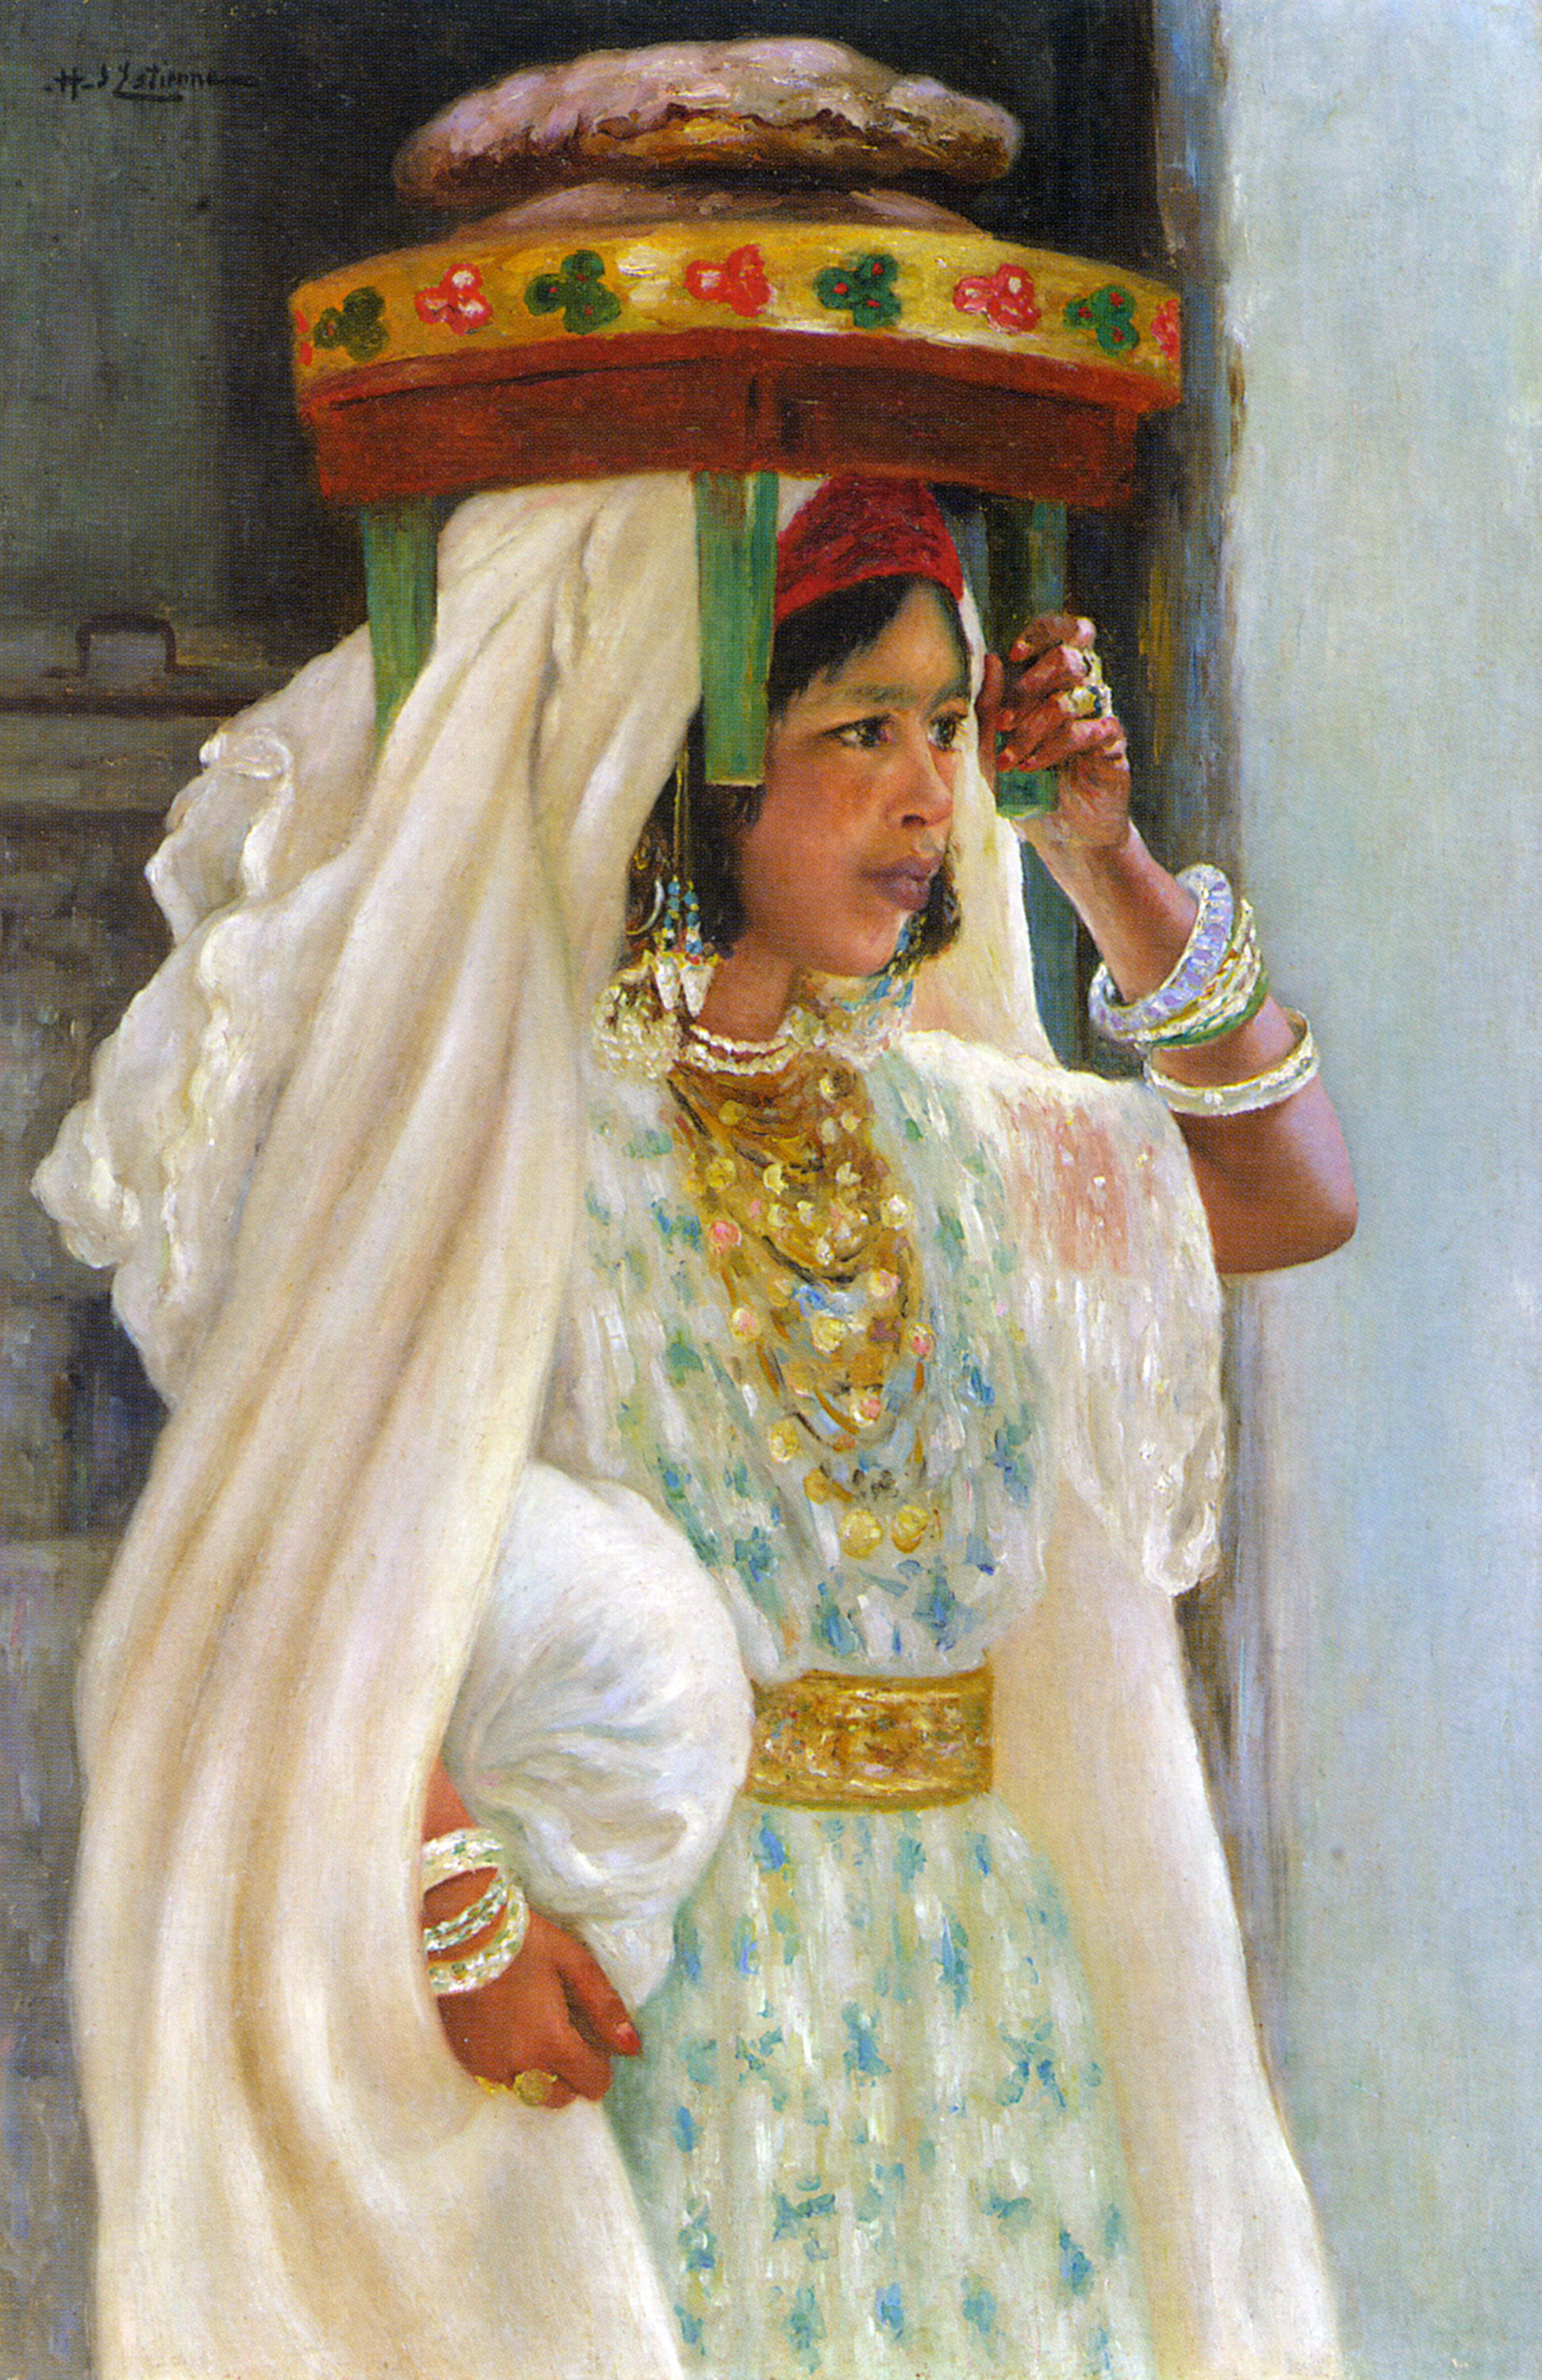 An Arab Girl Carrying Bread by Henry d Estienne